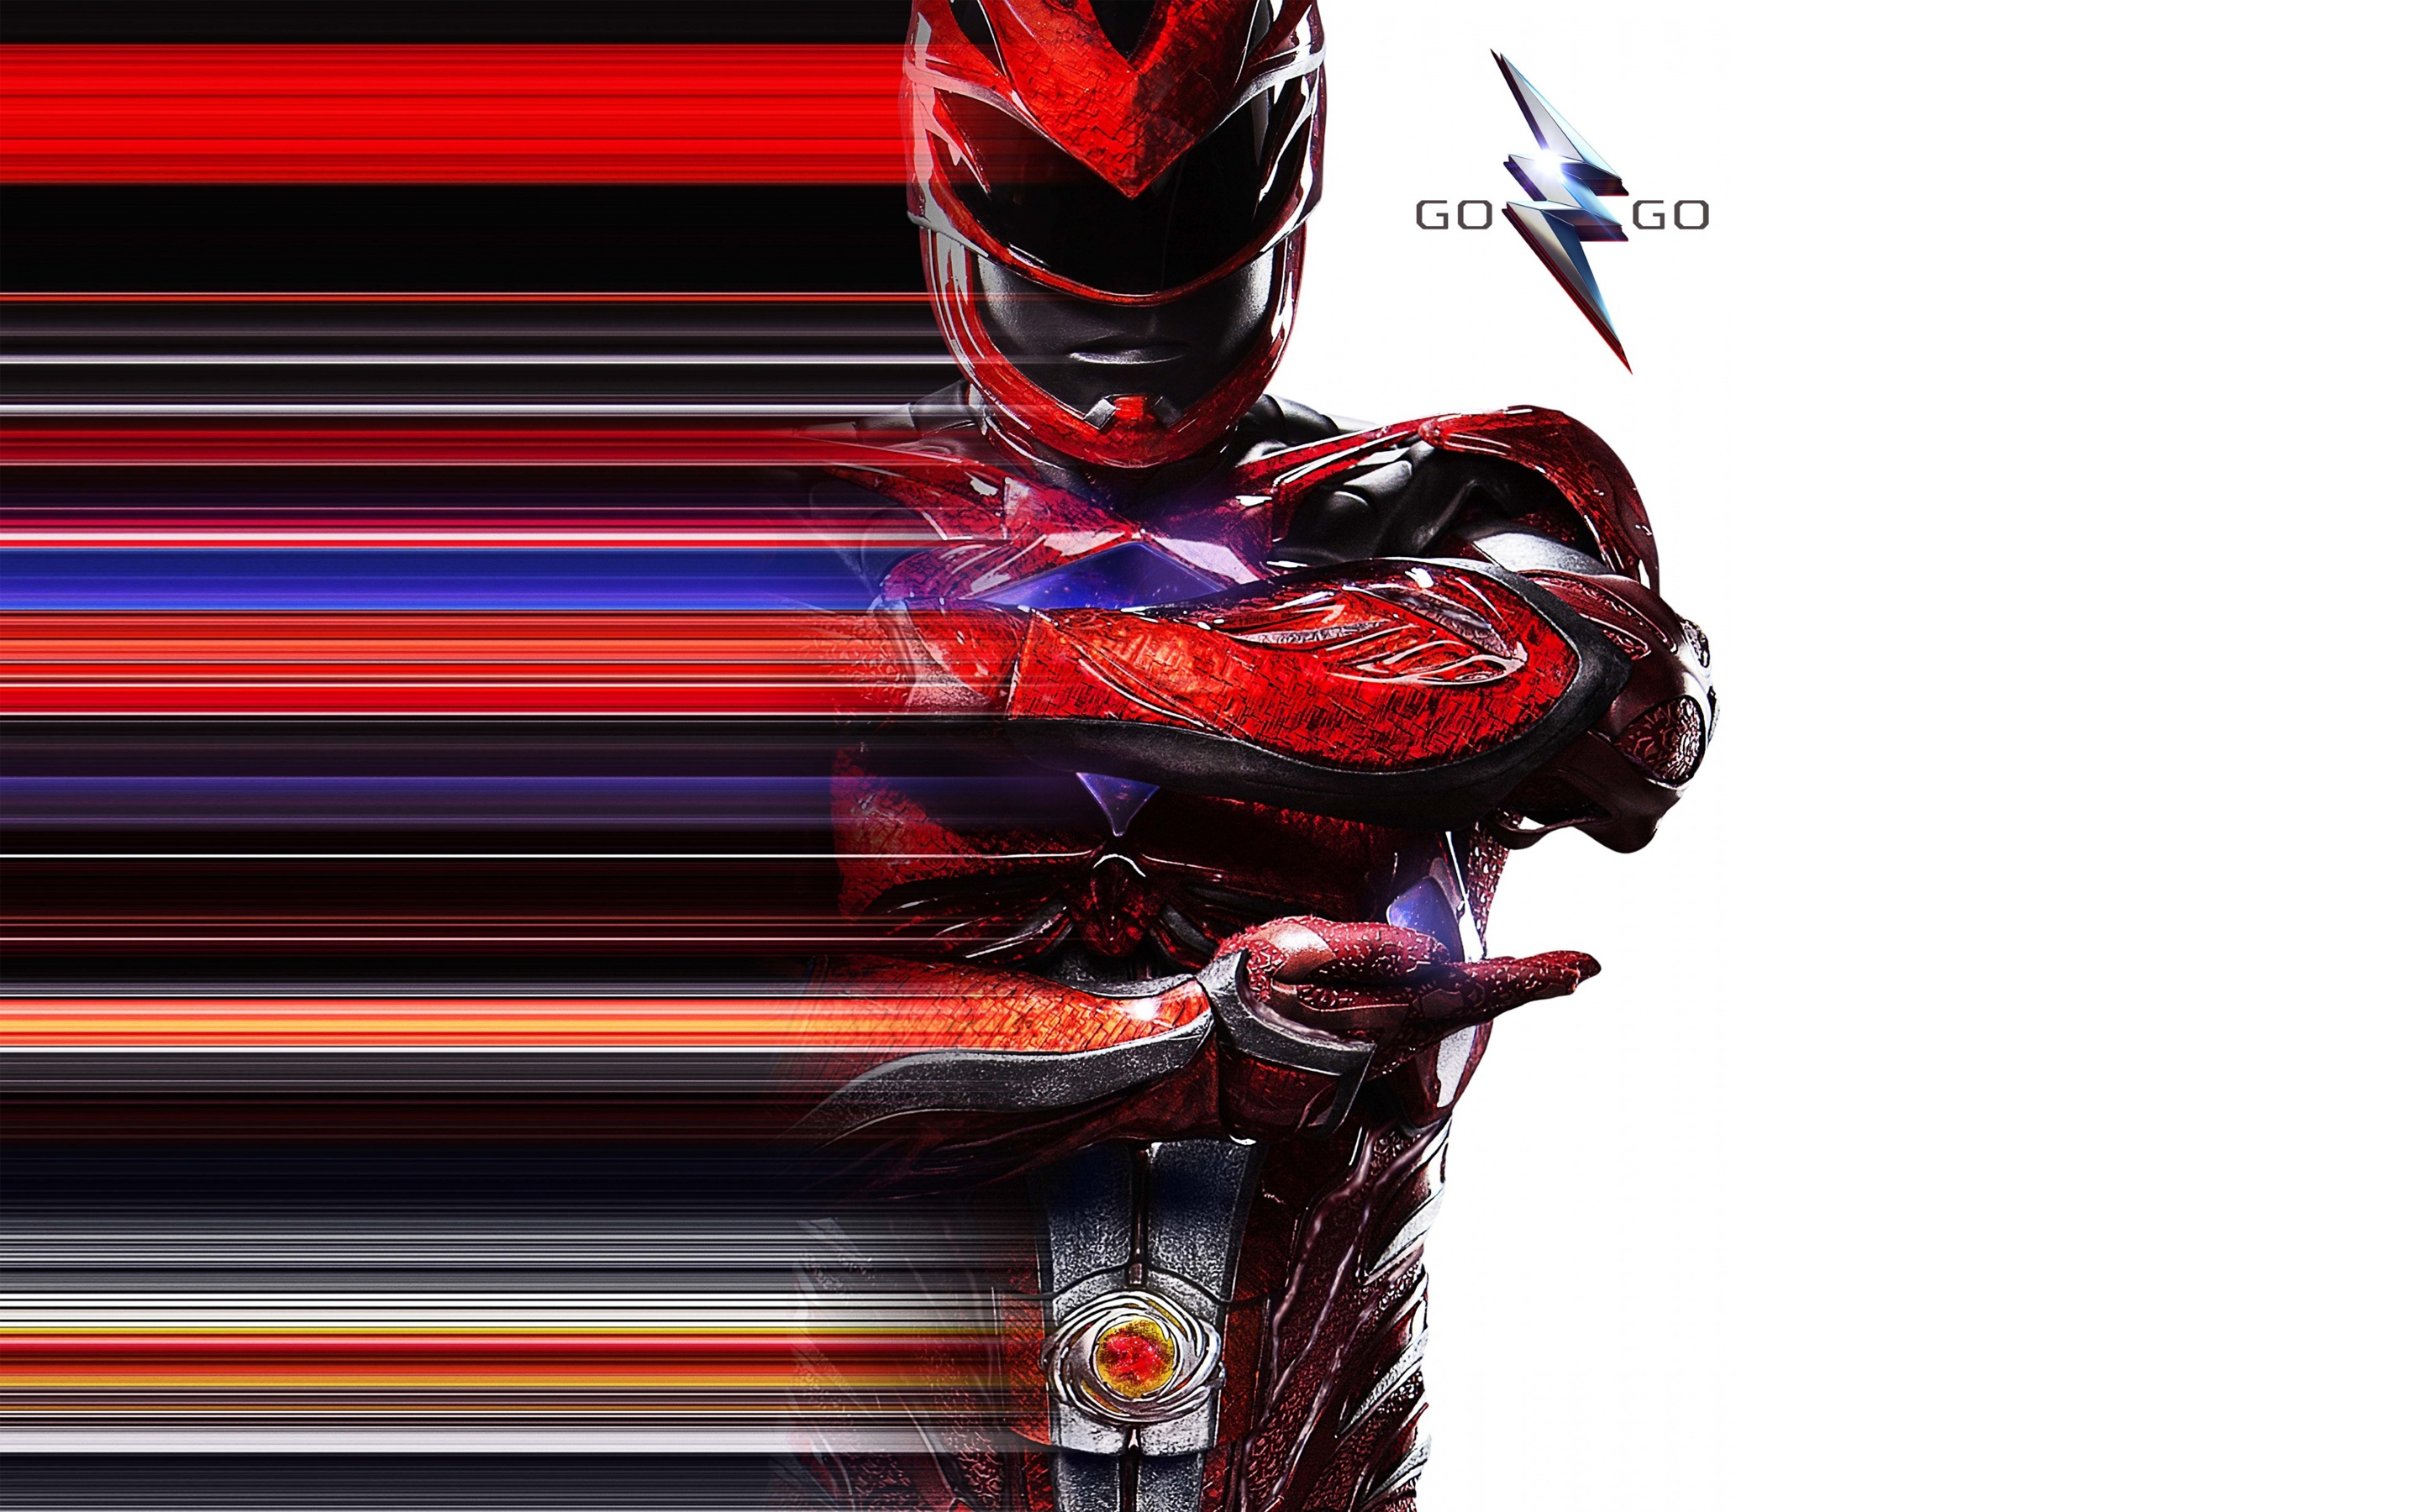 Red Power Ranger - Threadless Entry on Behance